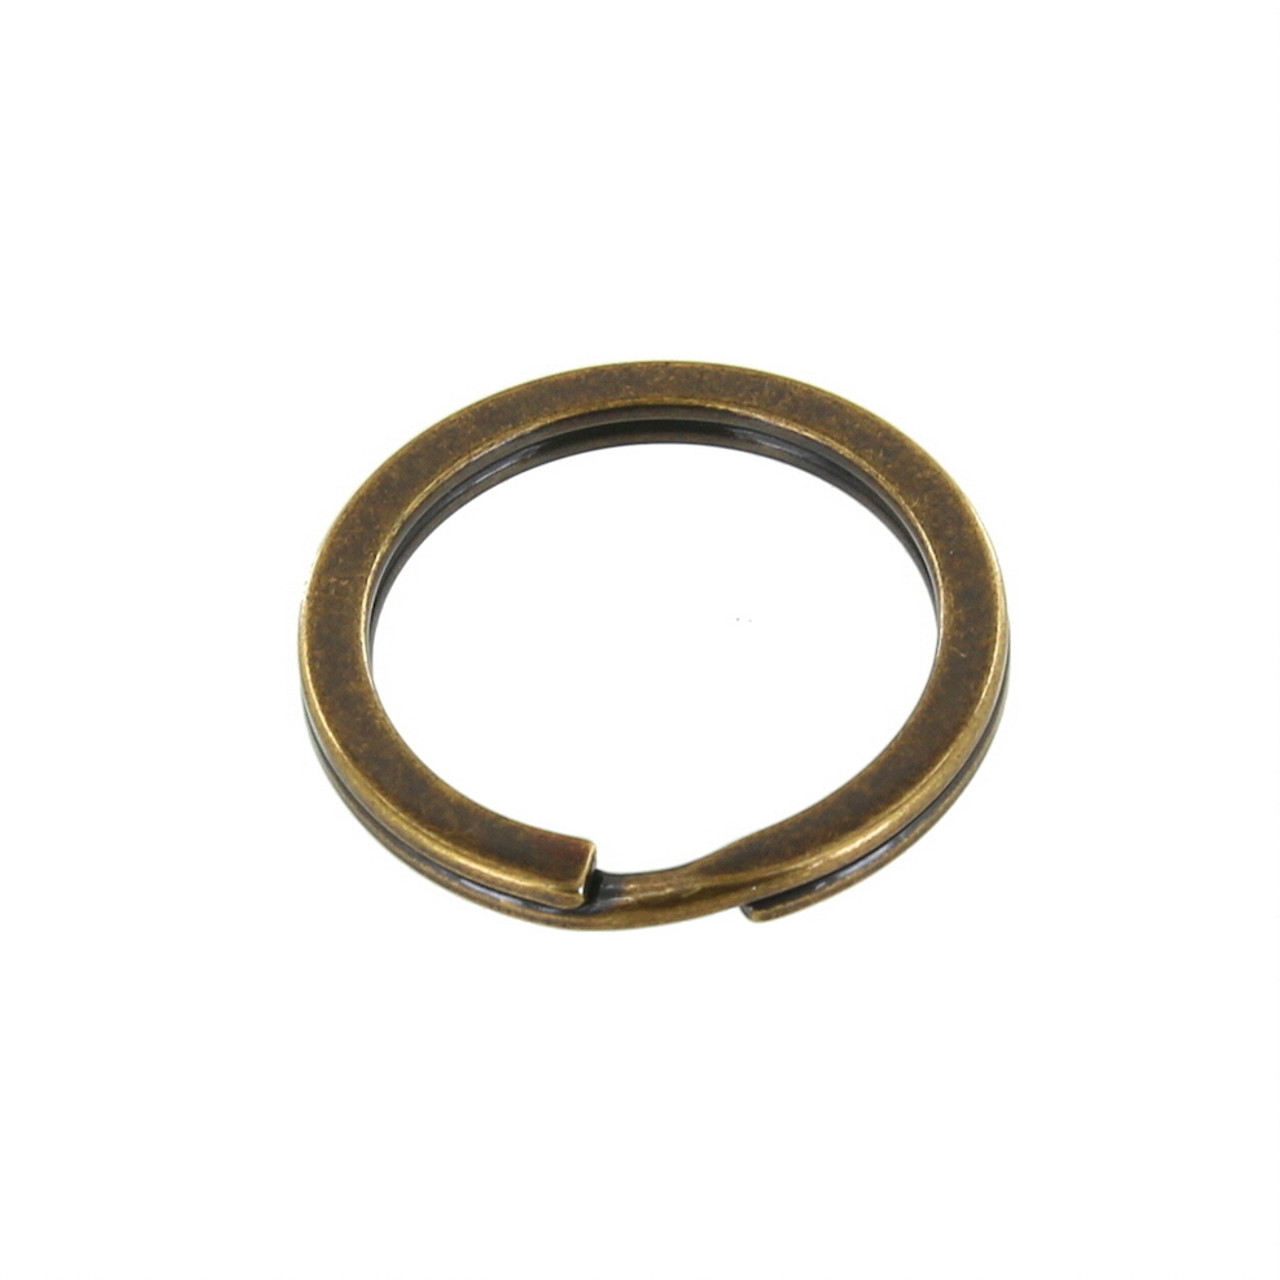 Key Rings, Brass & Metal Split Rings & Holders